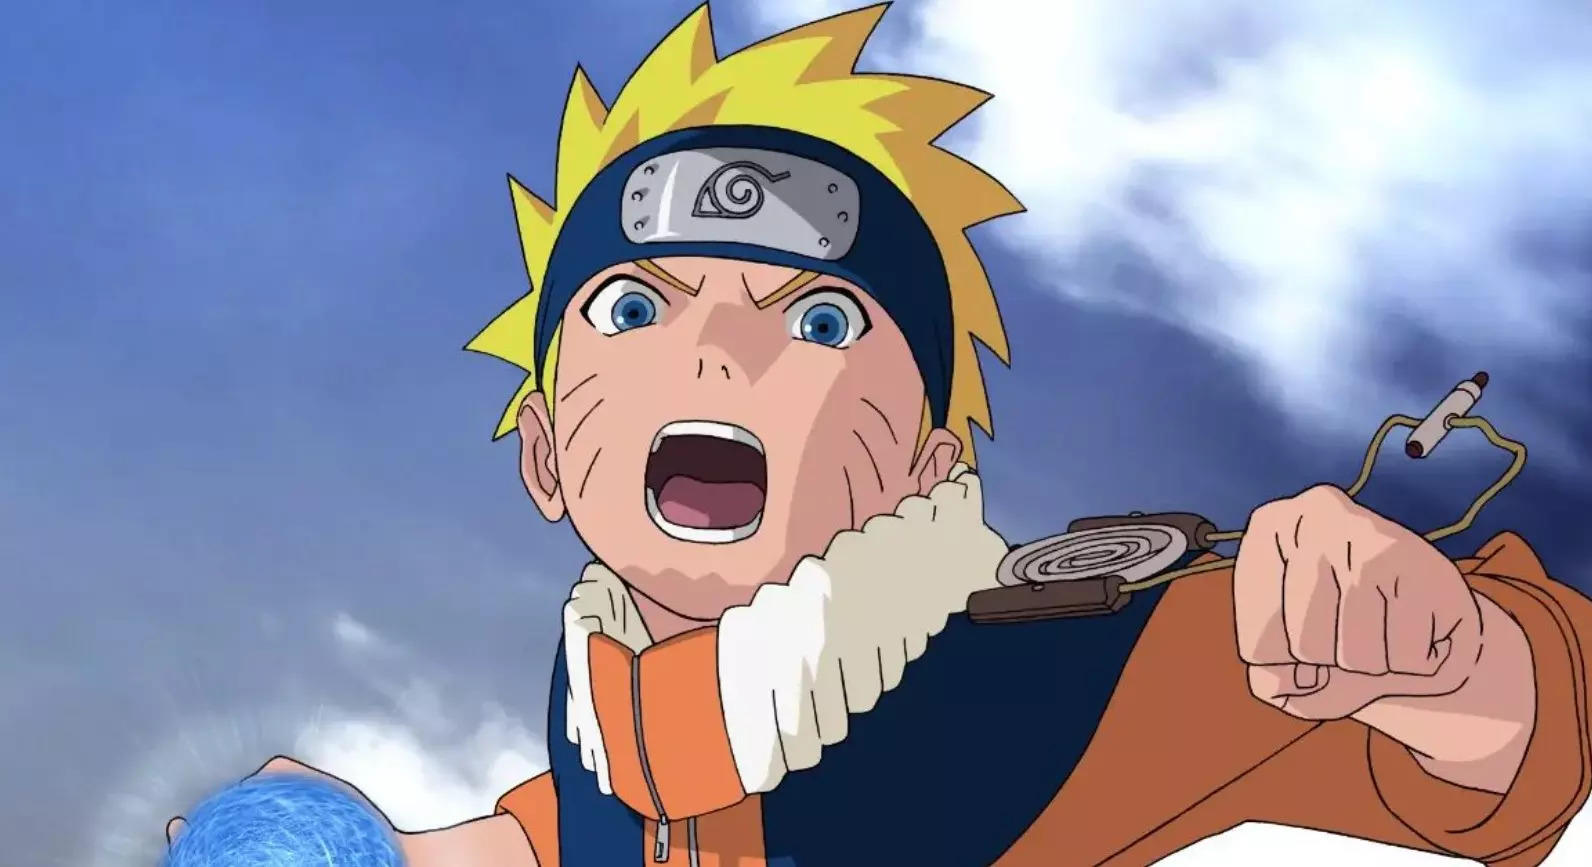 Crunchyroll.pt - O Naruto pode ser um pouco duro as vezes, talvez você não  saiba disso, mas HOJE É ANIVERSÁRIO DELE 🎉🎉🎉